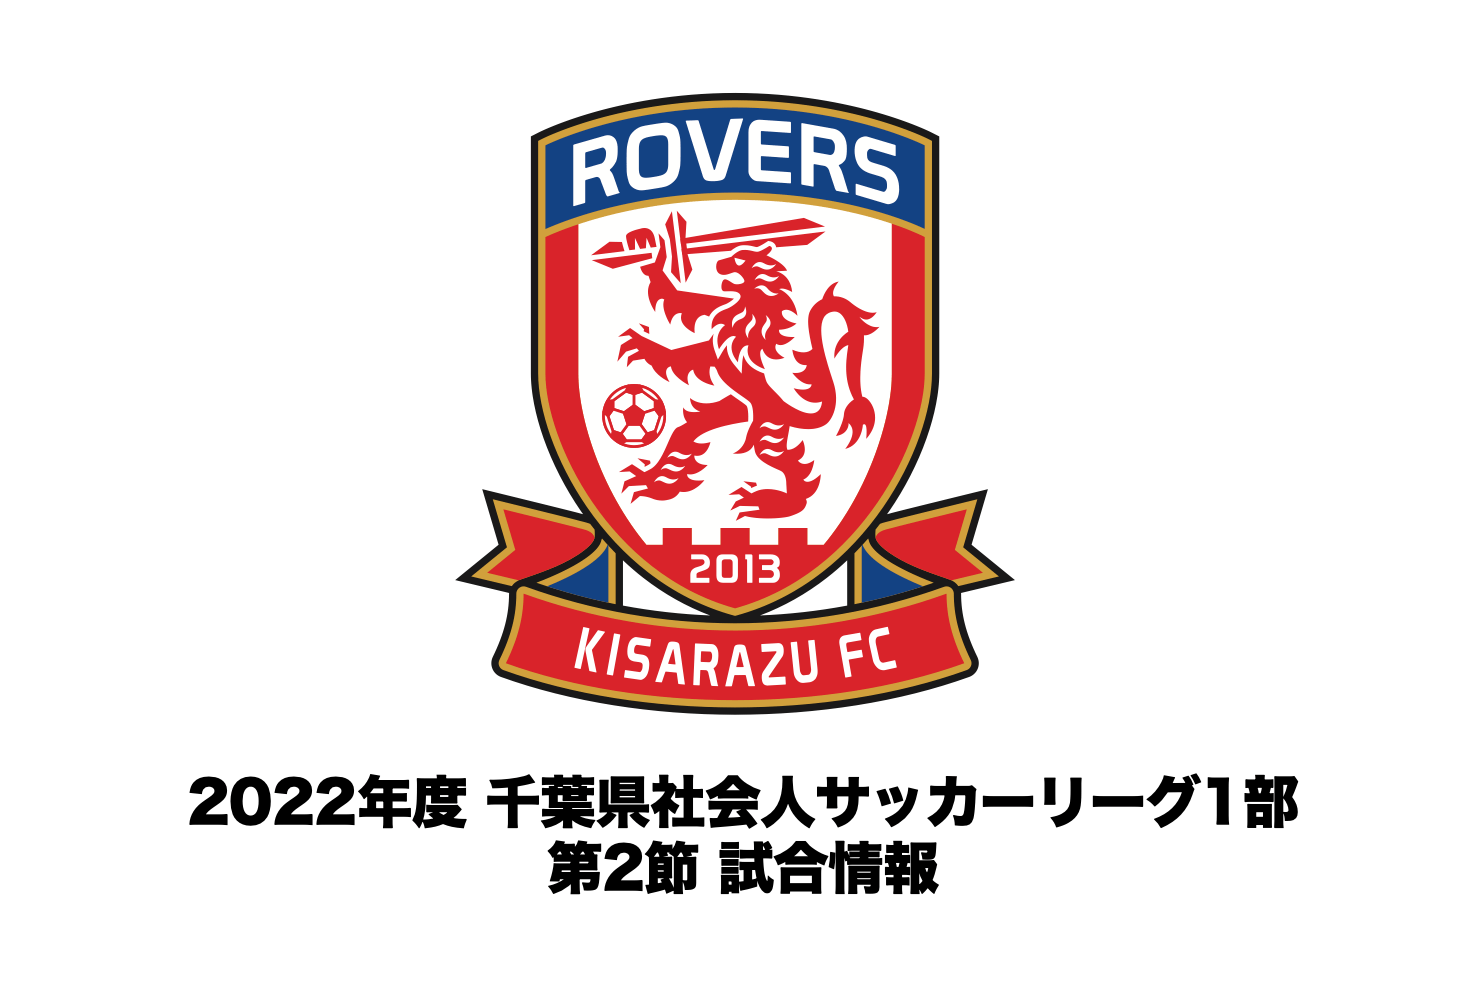 【試合情報】2022年度 千葉県社会人サッカーリーグ1部 第2節について